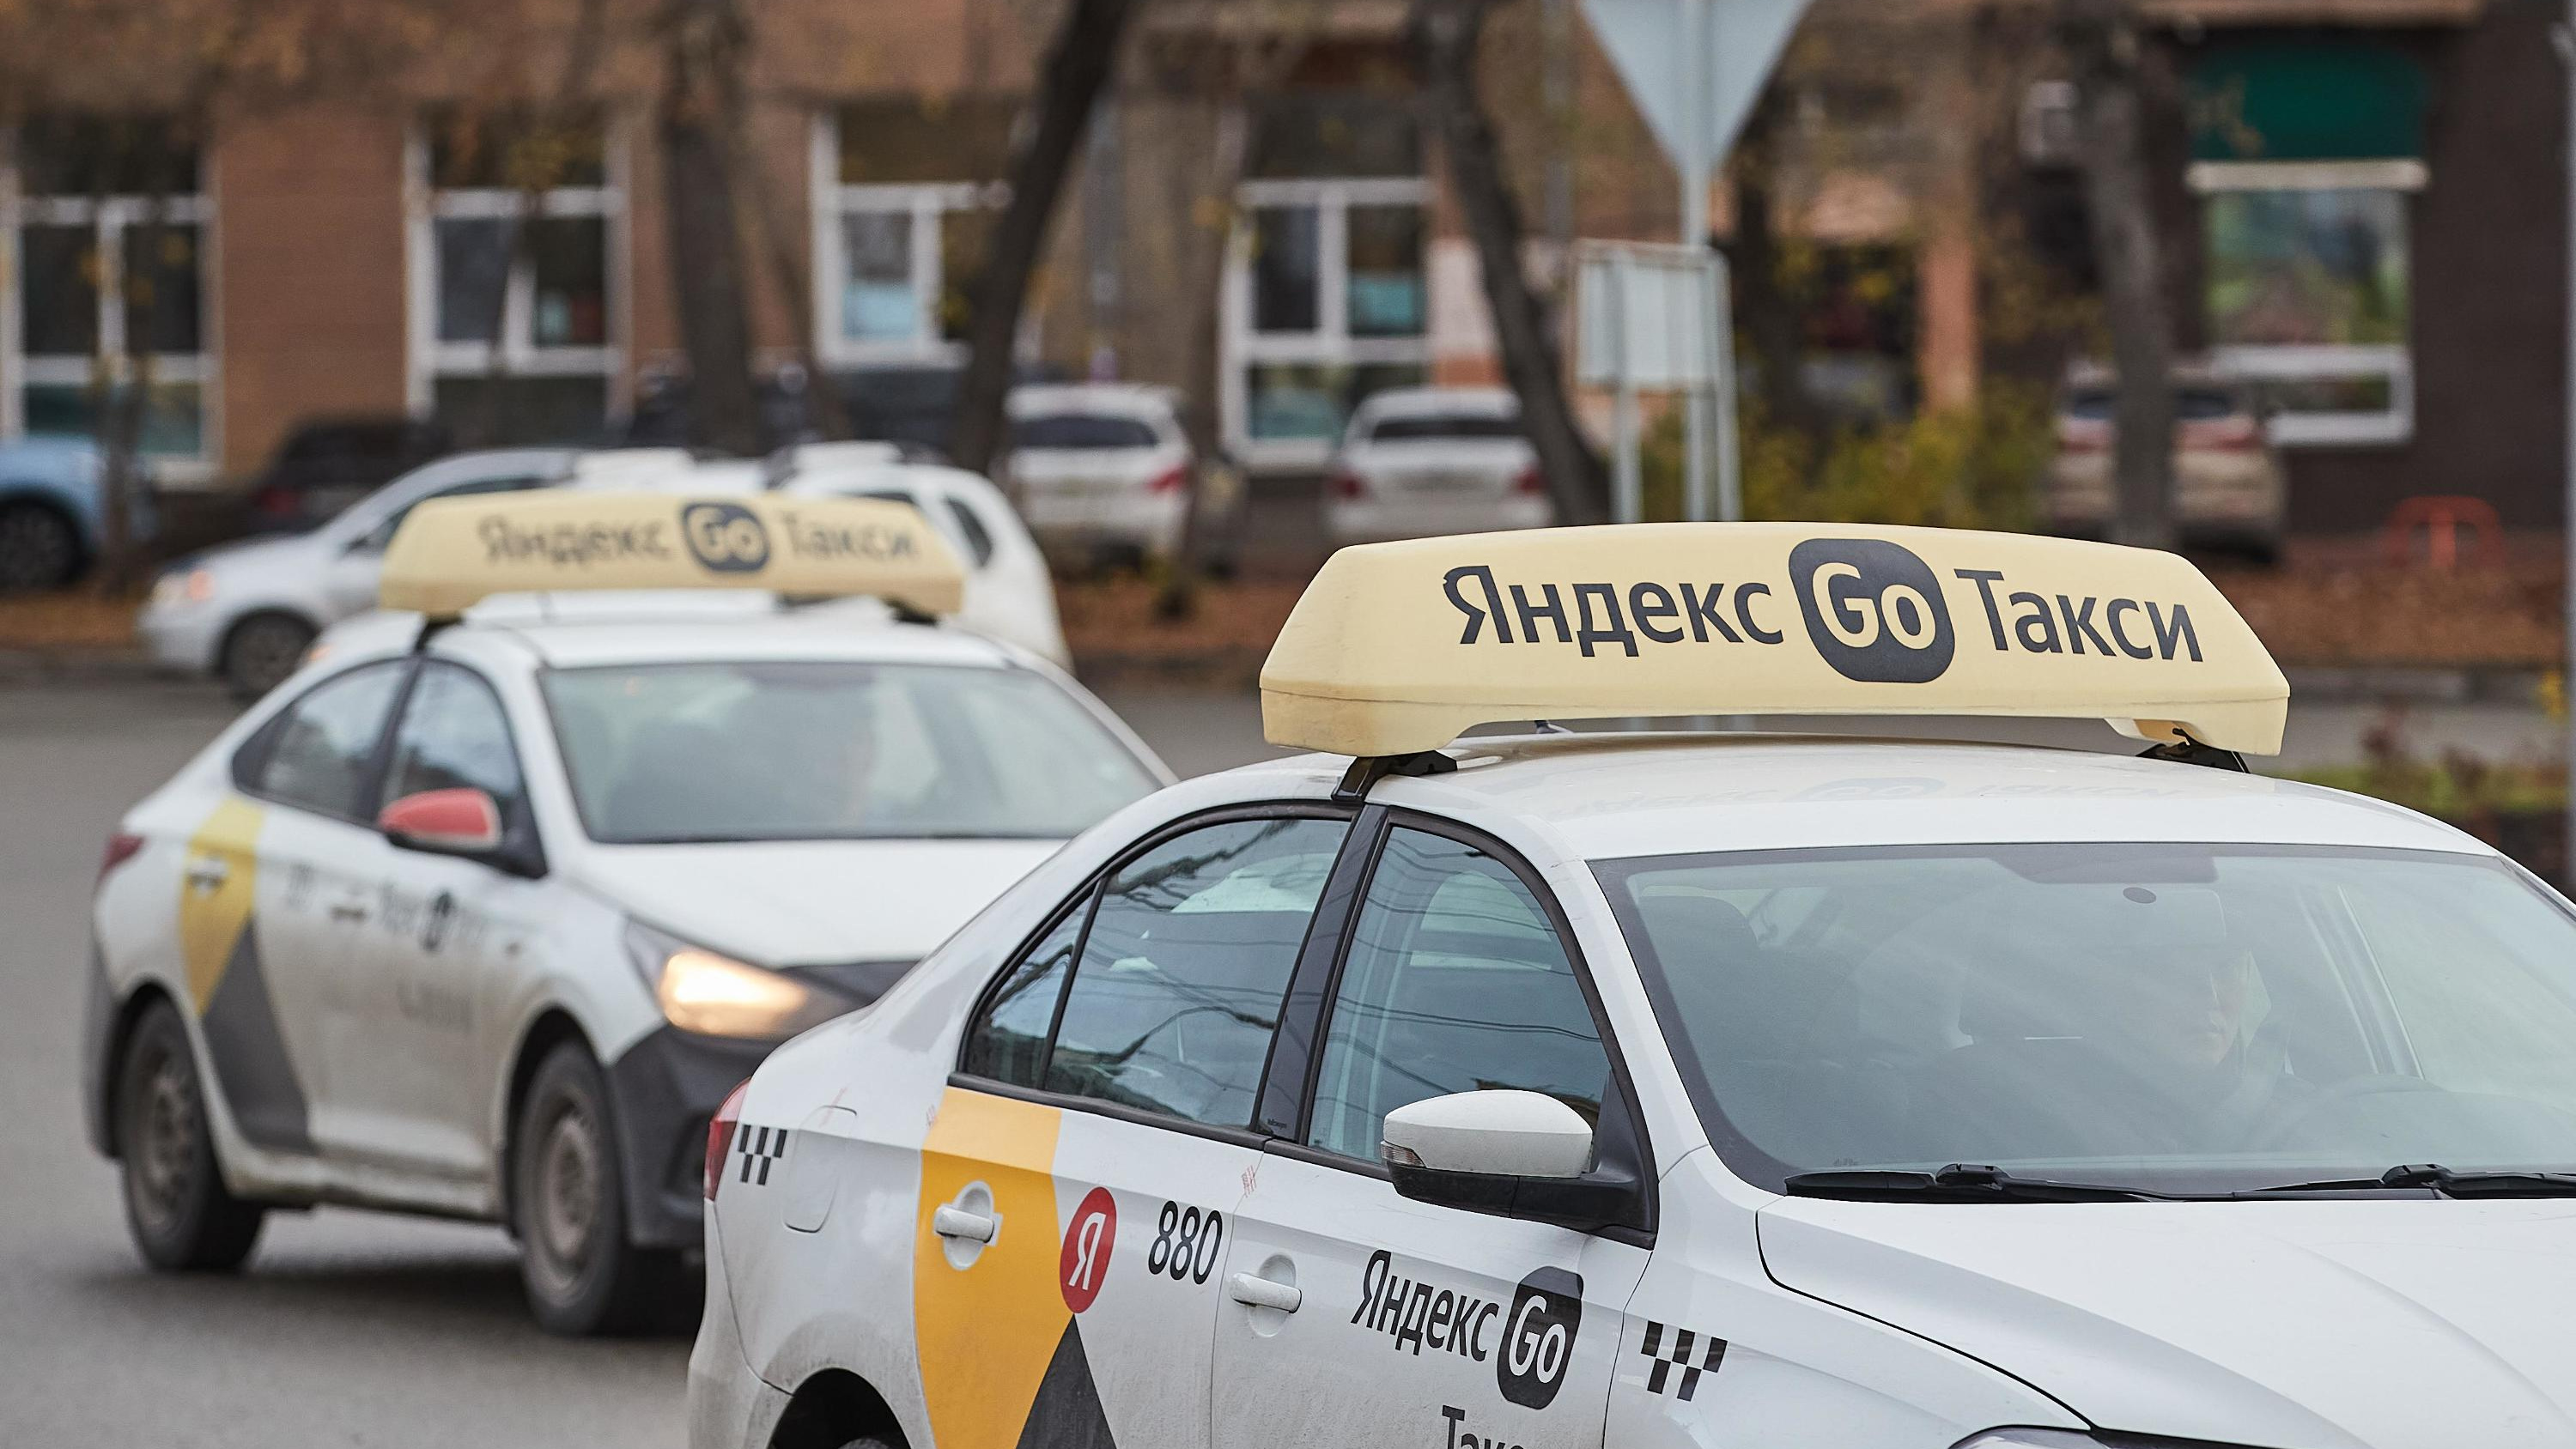 Иностранцам запретили работать в такси и продавать напитки по патентам в Новосибирской области — изучаем документ